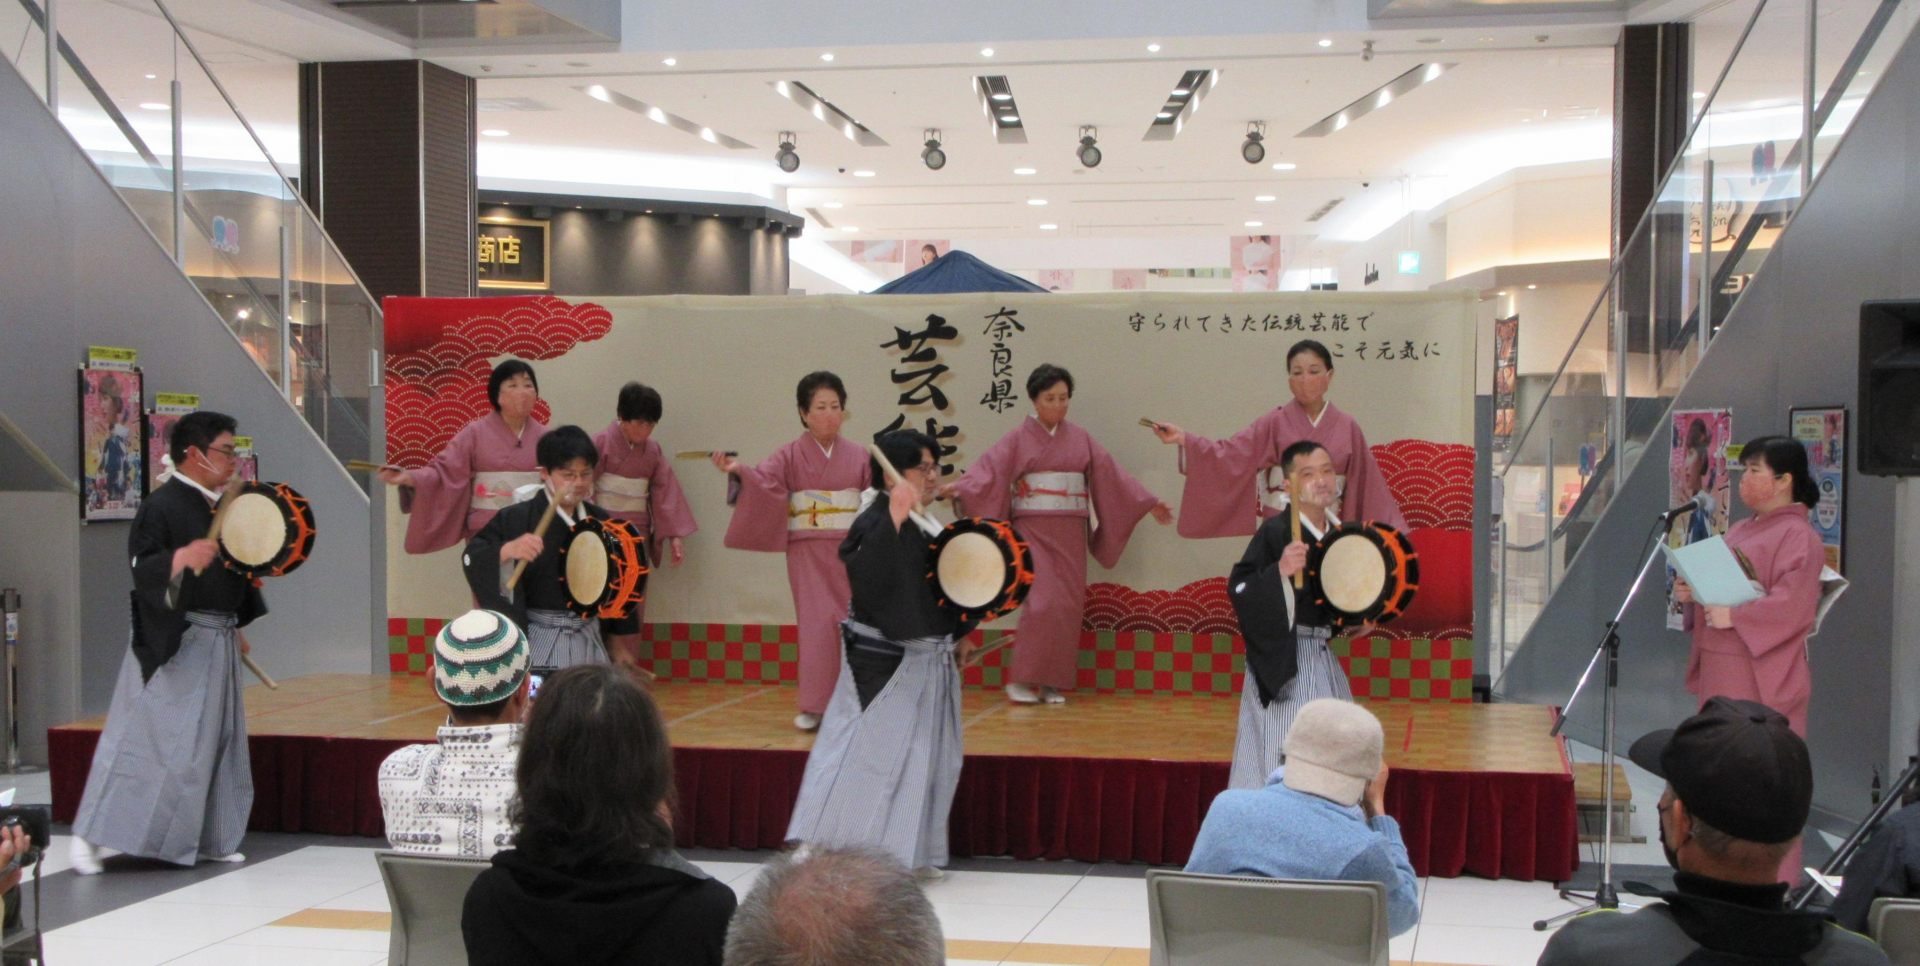 Shinohara Odori se ha desarrollado no solo como un ritual sintoísta, sino también como una actuación para entretener a la gente.